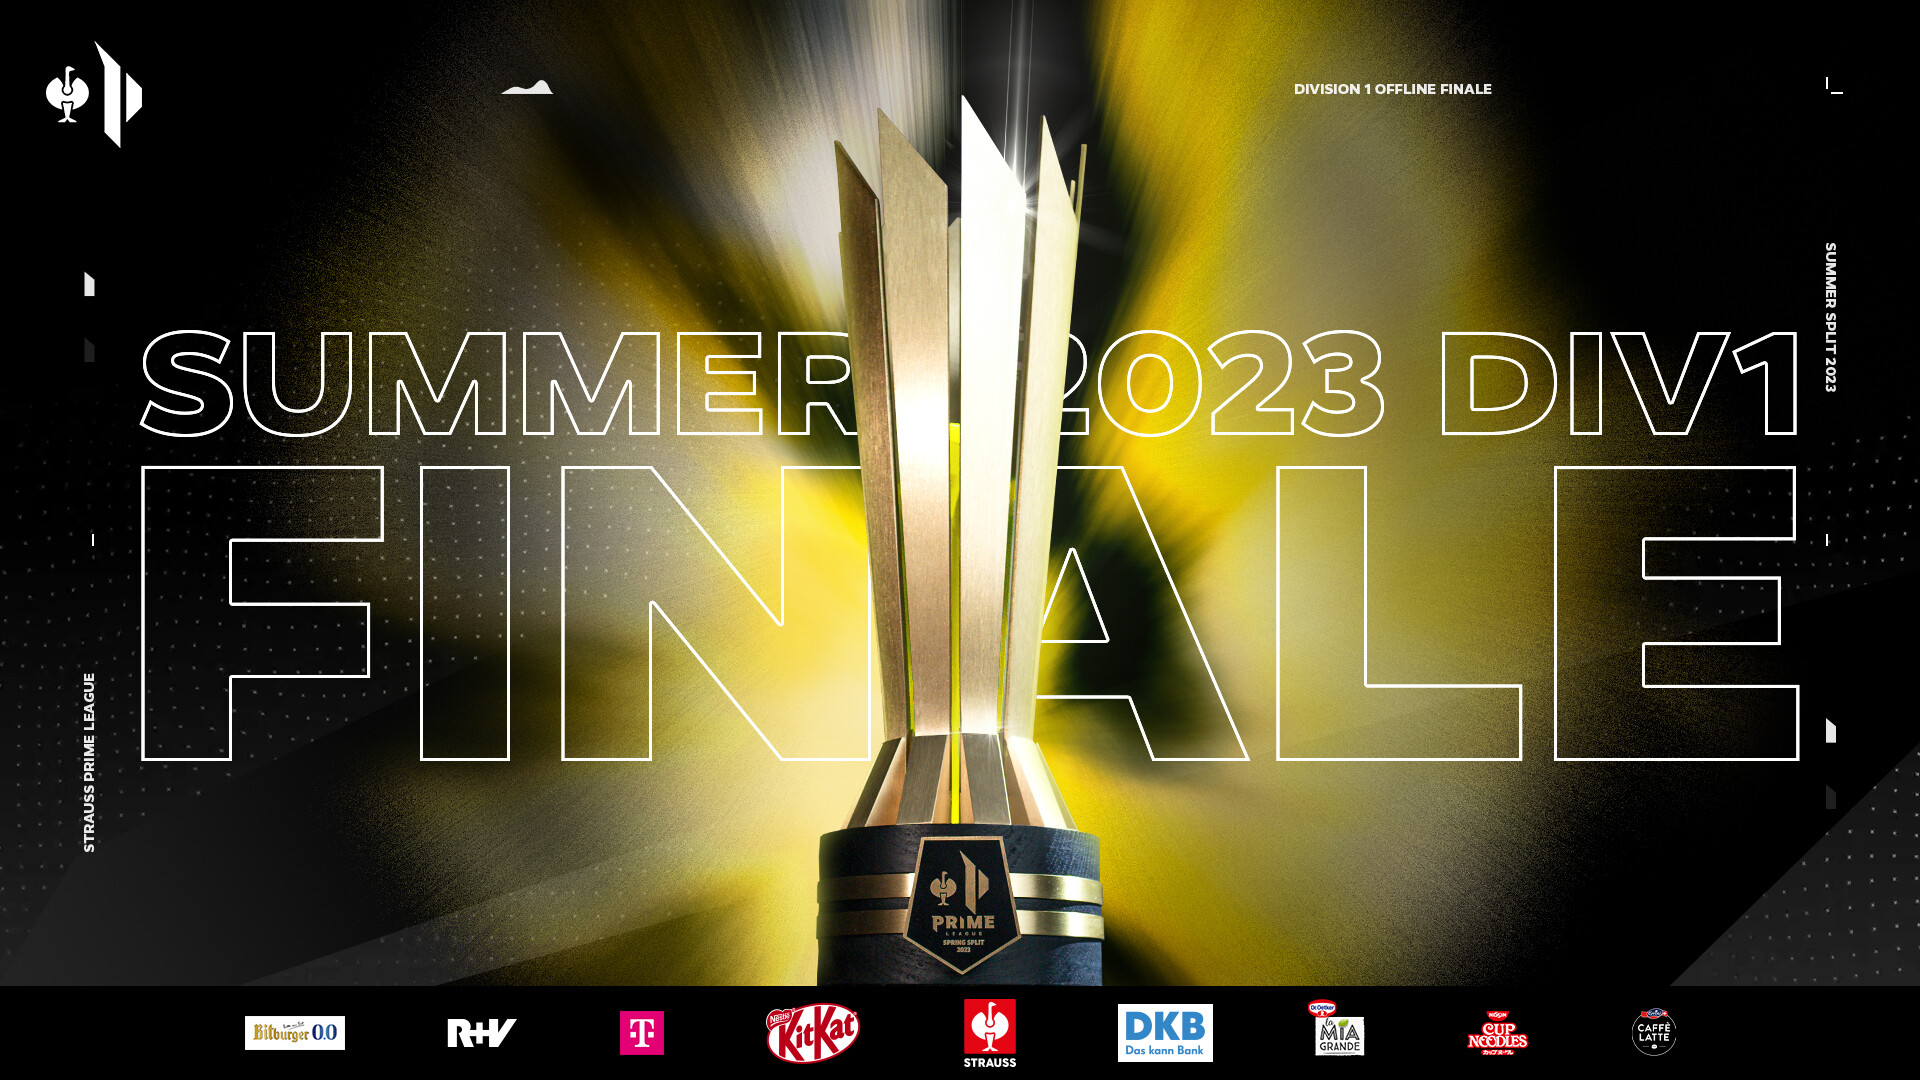 Die Prime League Trophäe des Summer Splits 2023 erleuchtet vor dem Schriftzug Summer 2023 Div 1 Finale. Darunter die Logos der Sponsoren der Liga.